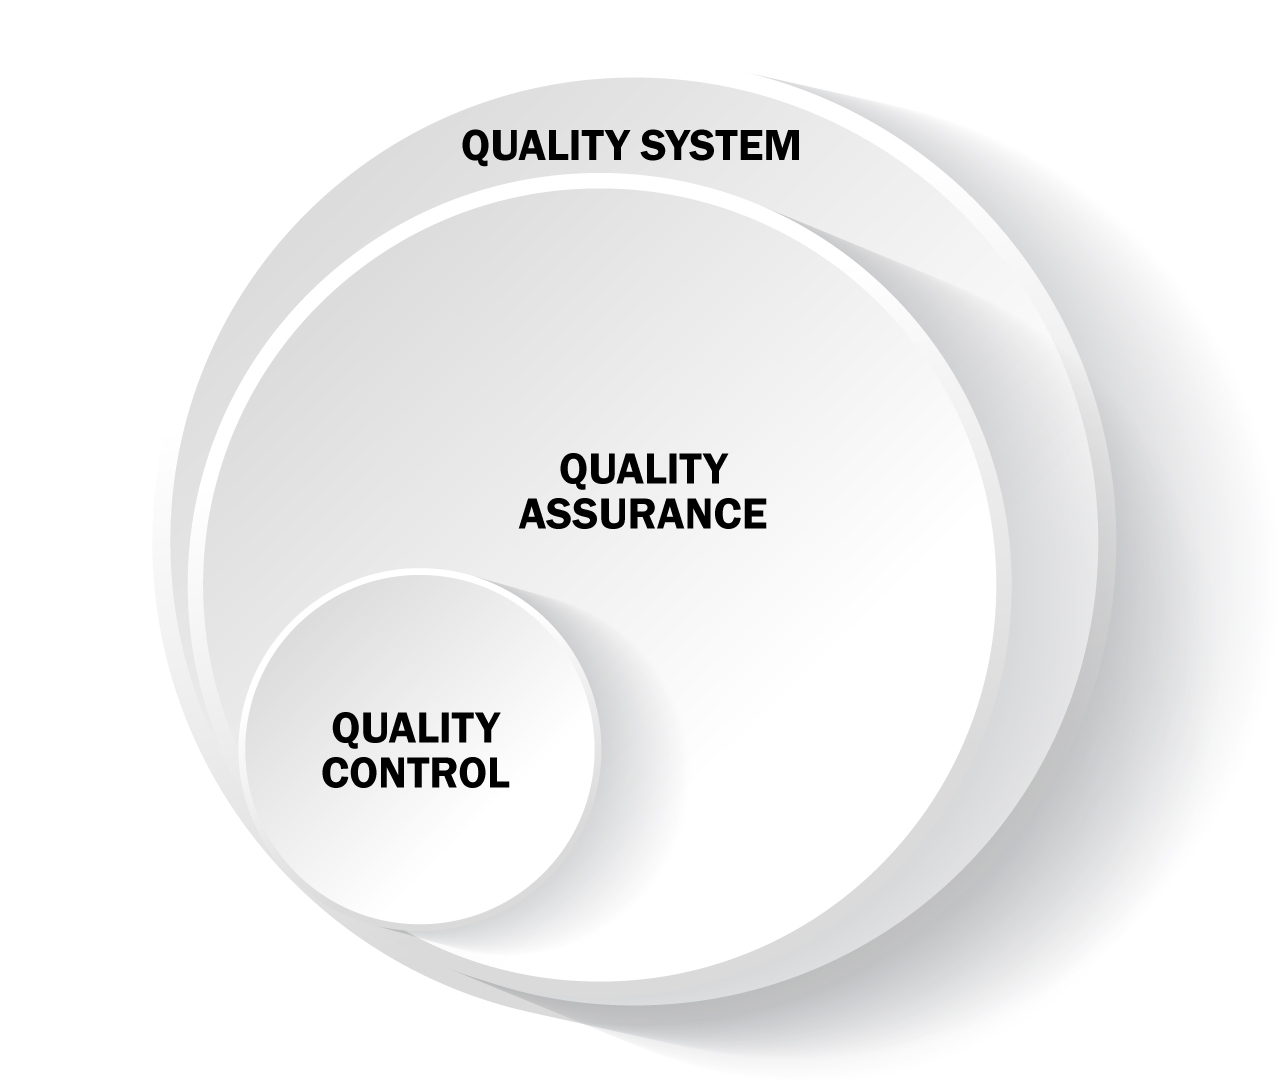 Différences entre les trois concepts, contrôle qualité, assurance qualité et systèmes de qualité